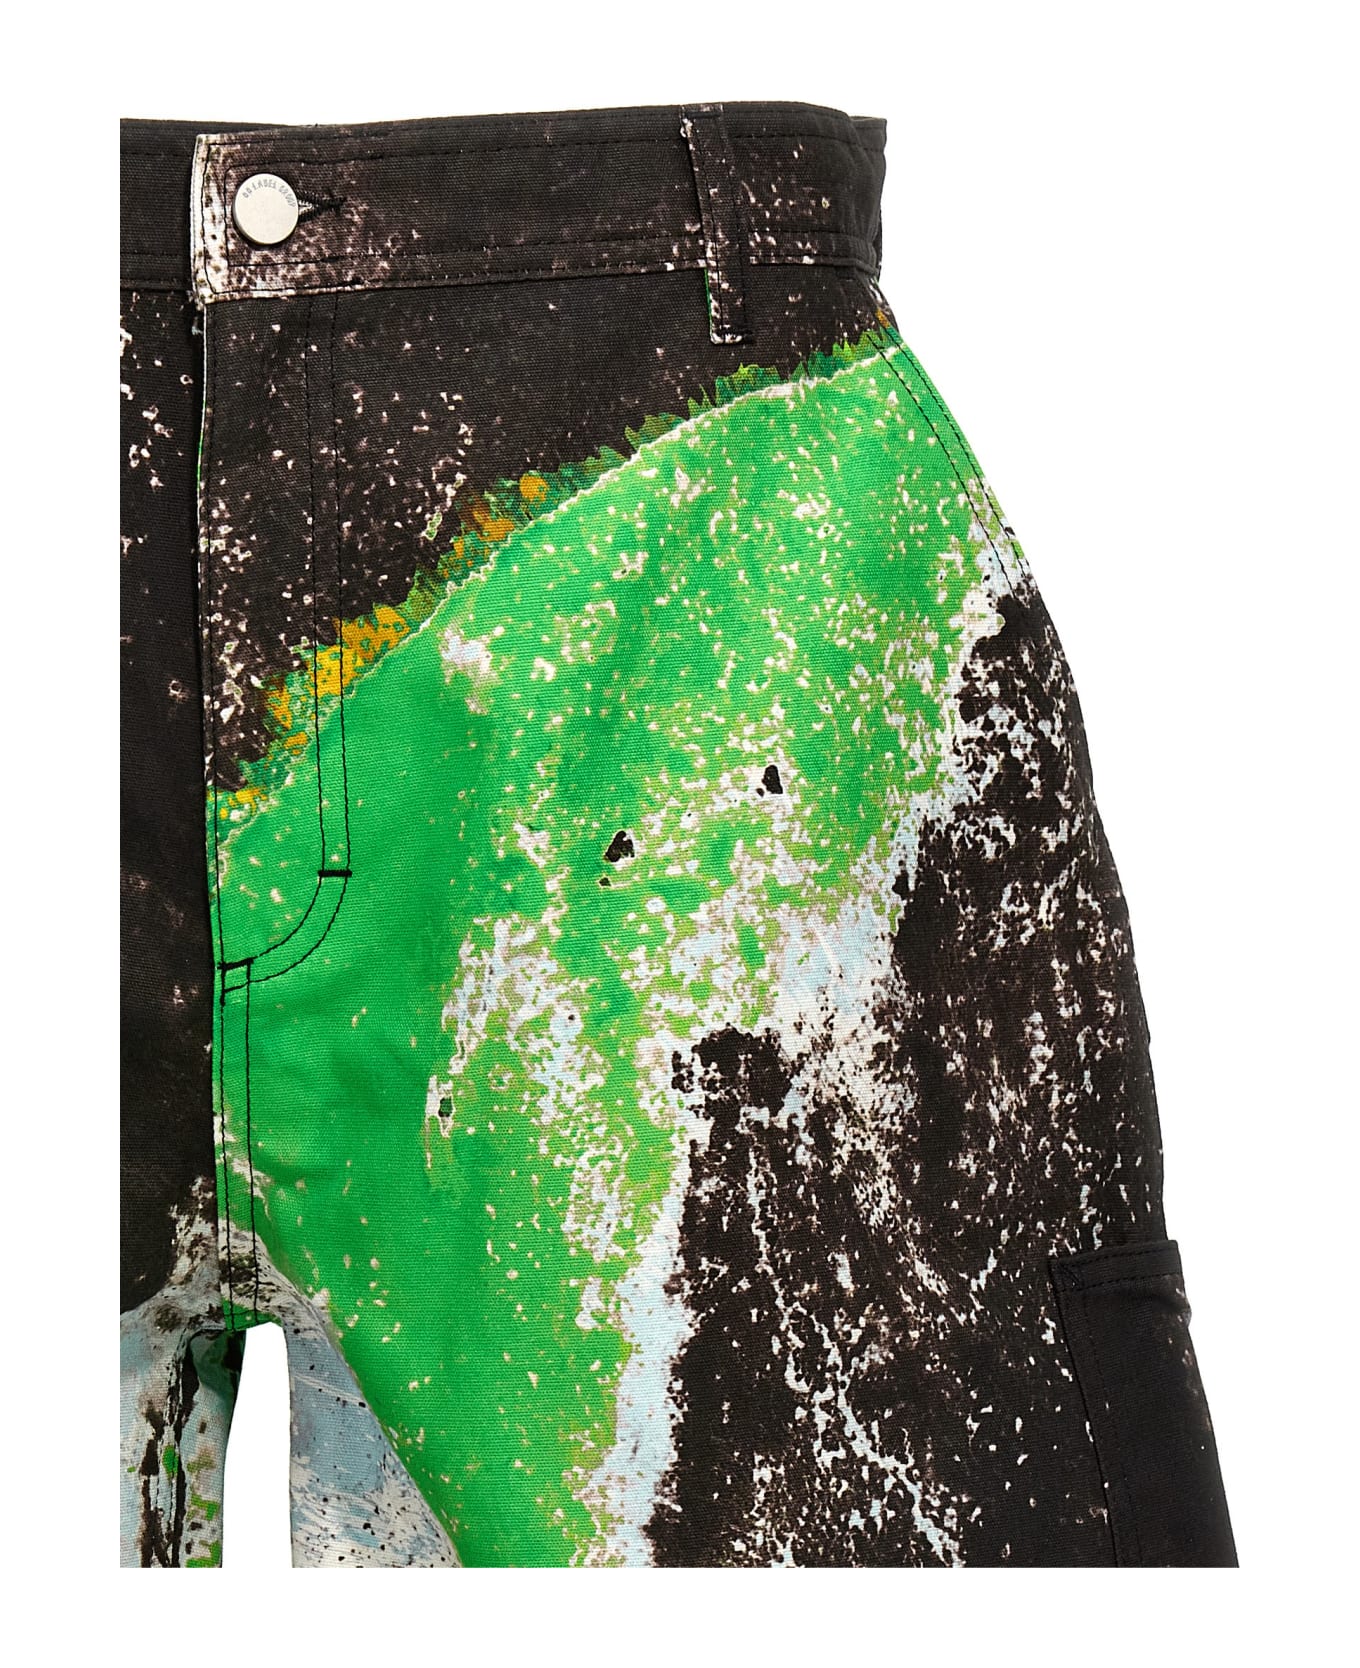 44 Label Group 'corrosive Carpenter' Bermuda Shorts - Multicolor